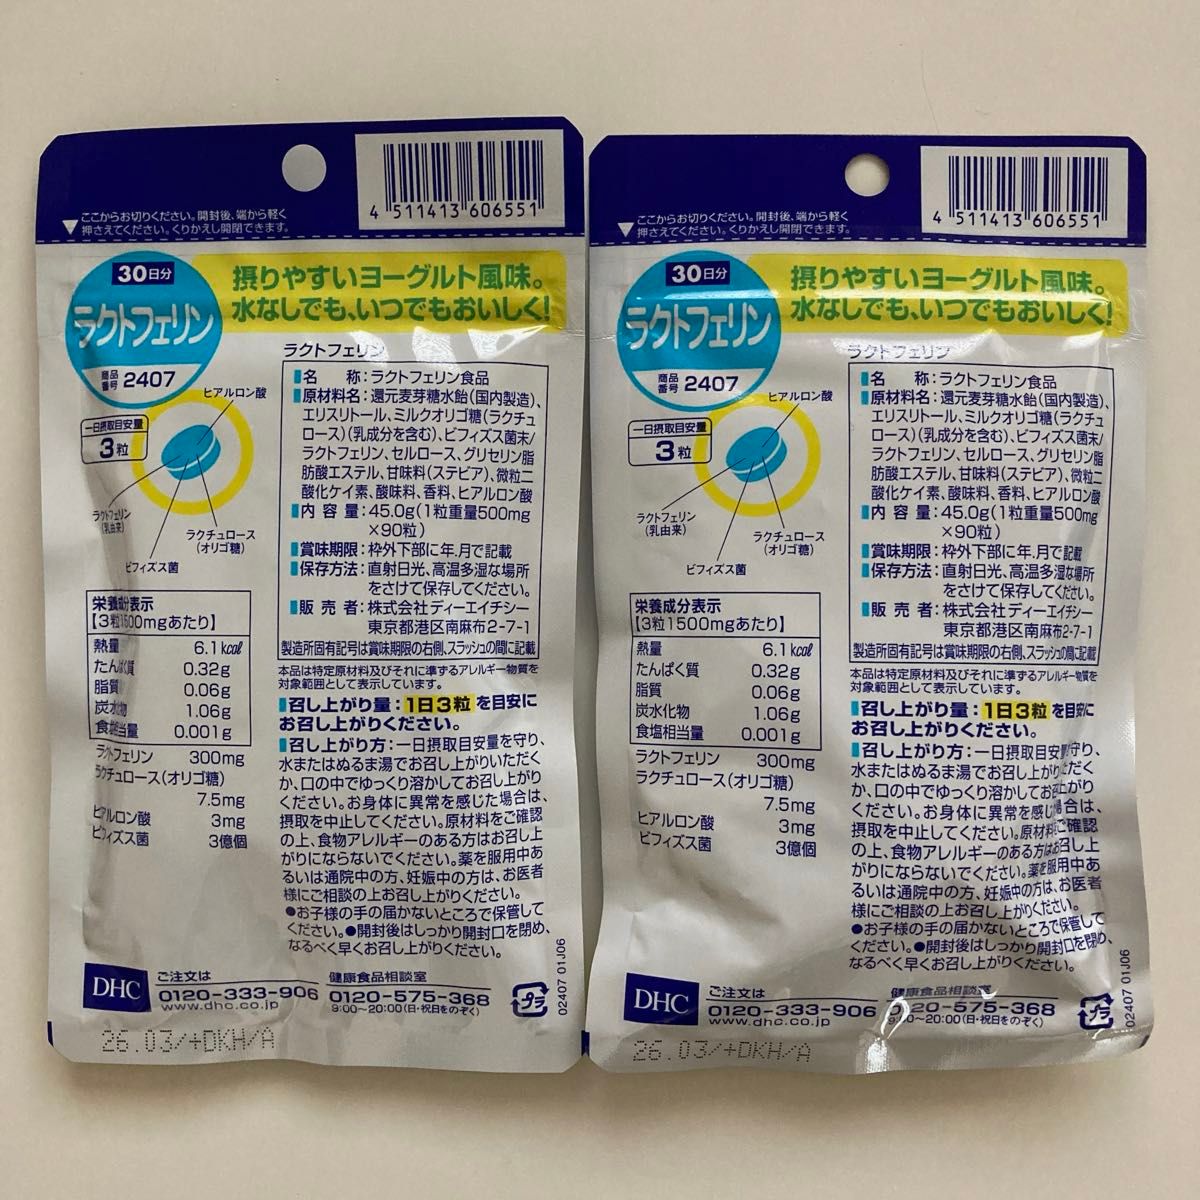 【新品未使用未開封】DHC ラクトフェリン 30日分(90粒)×2袋